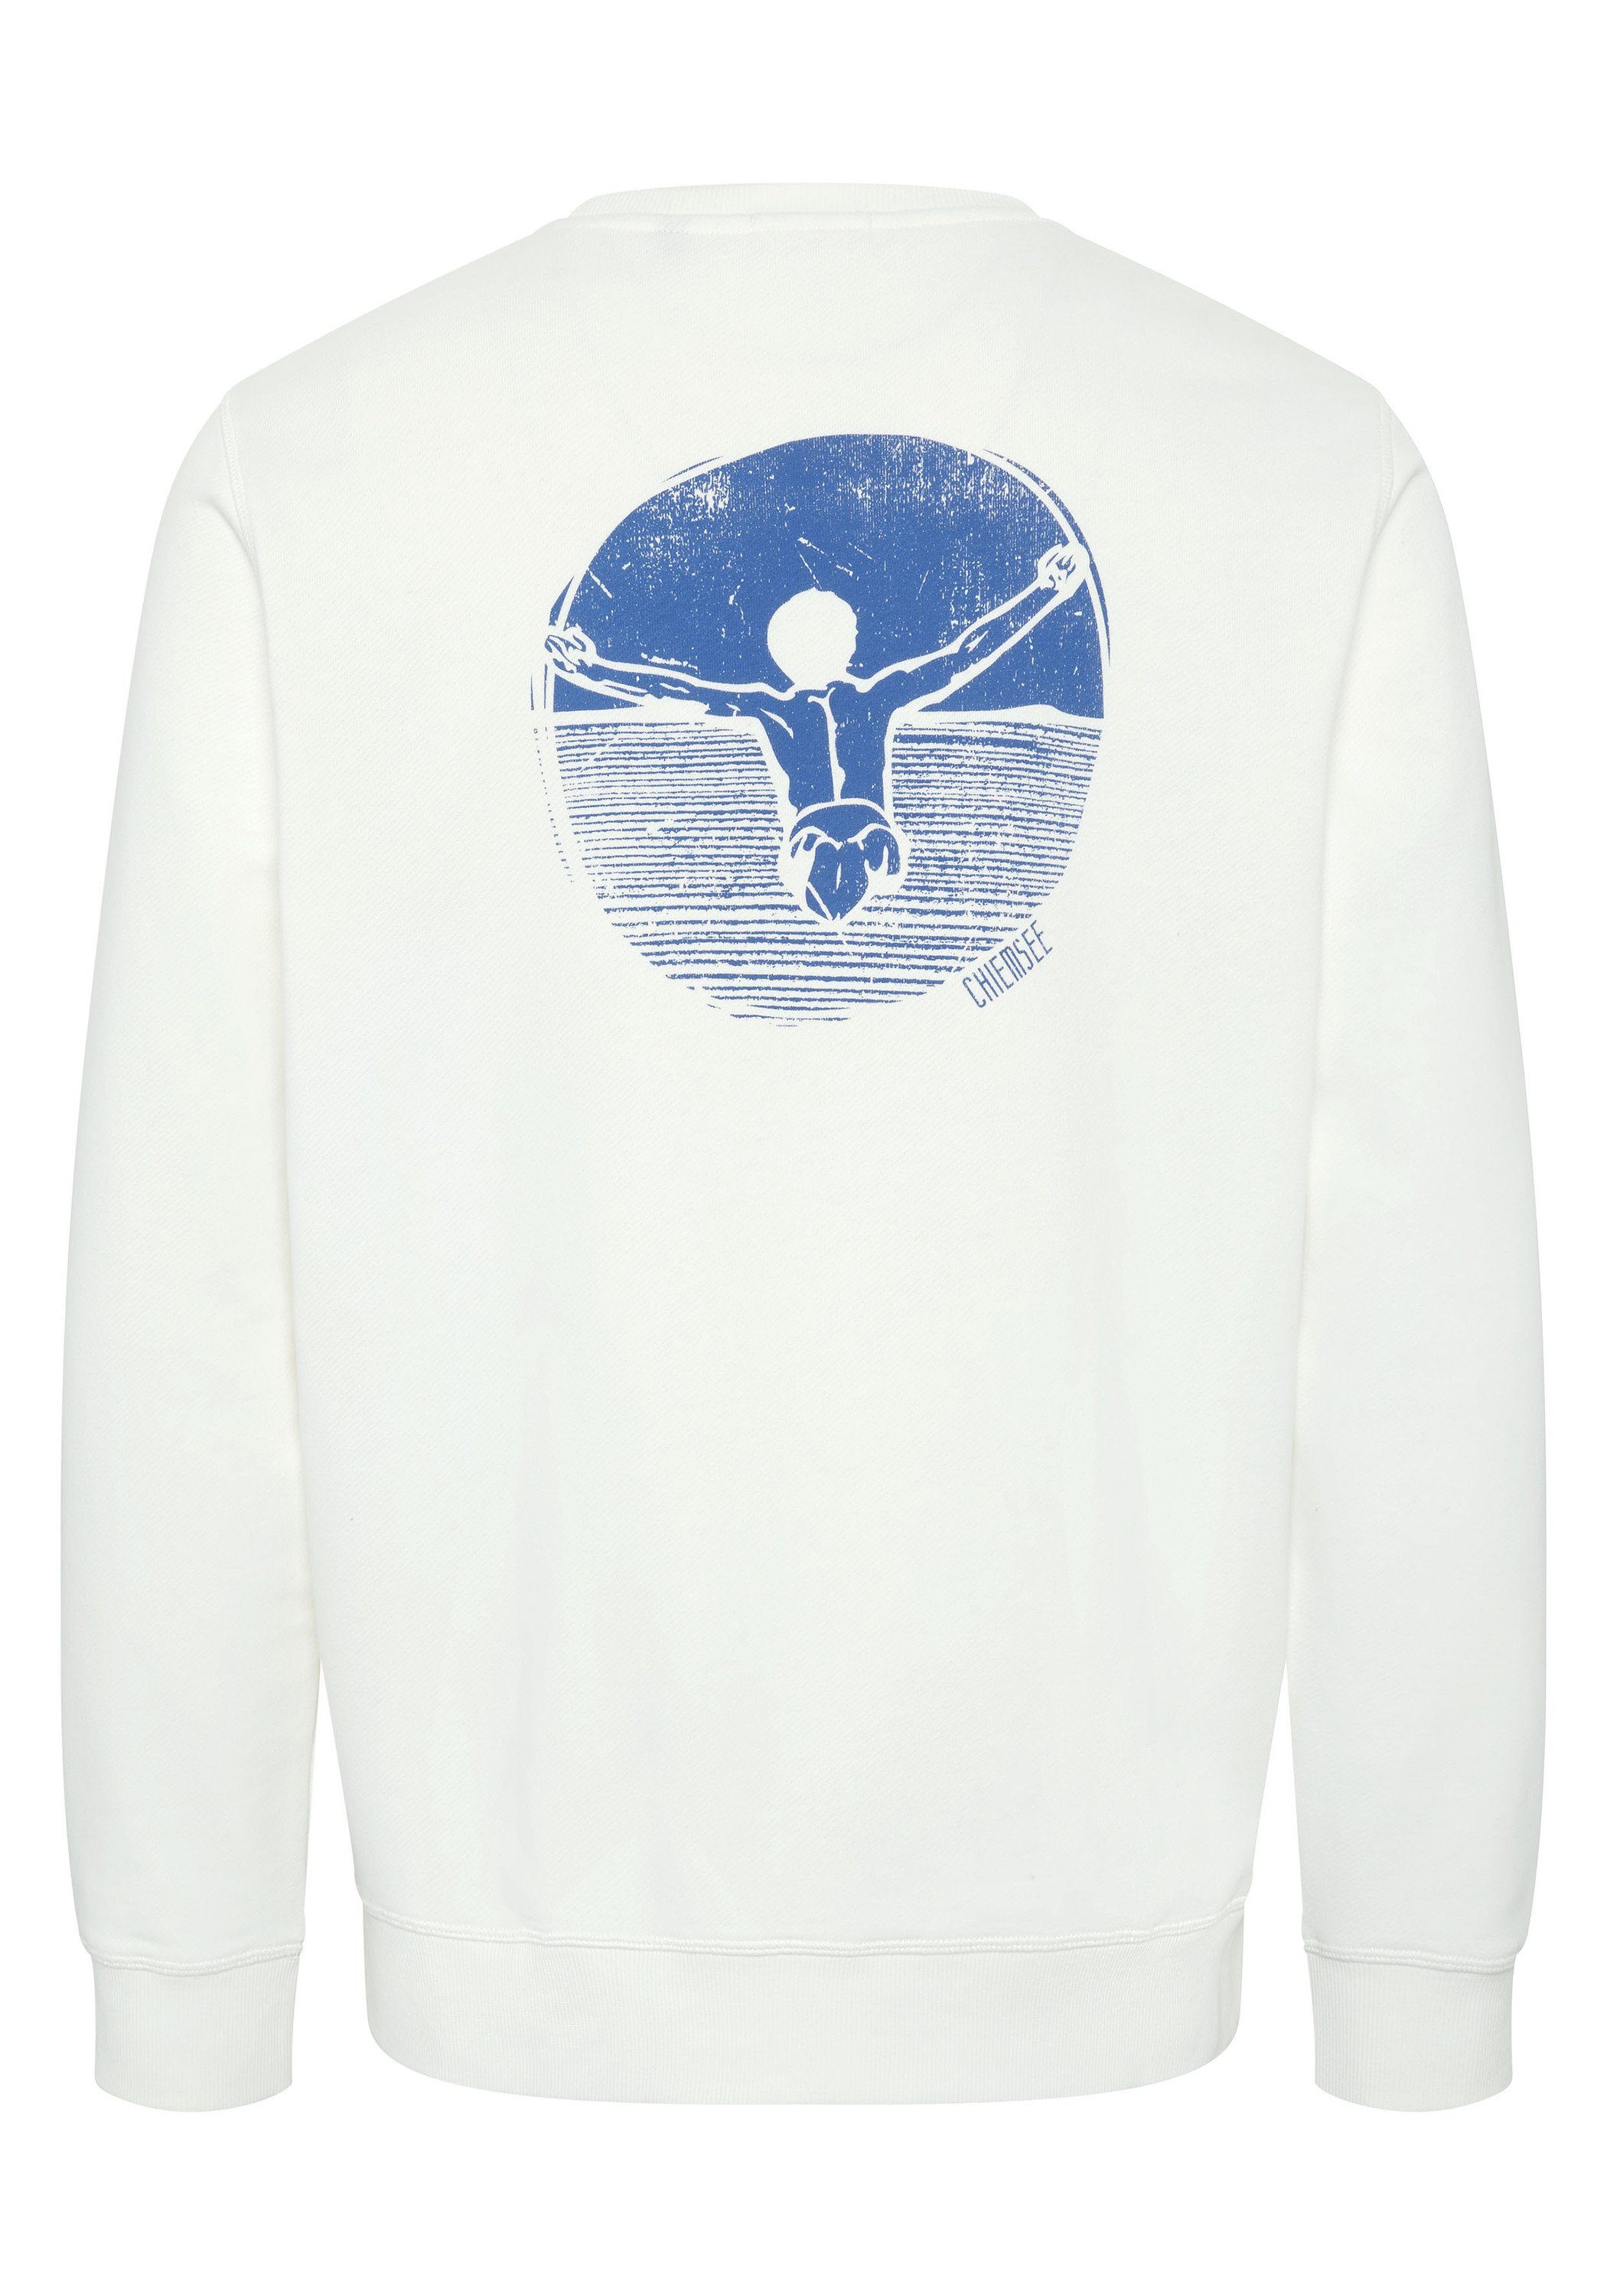 Chiemsee Sweatshirt Sweater mit Star 1 11-4202 Jumper-Motiv White